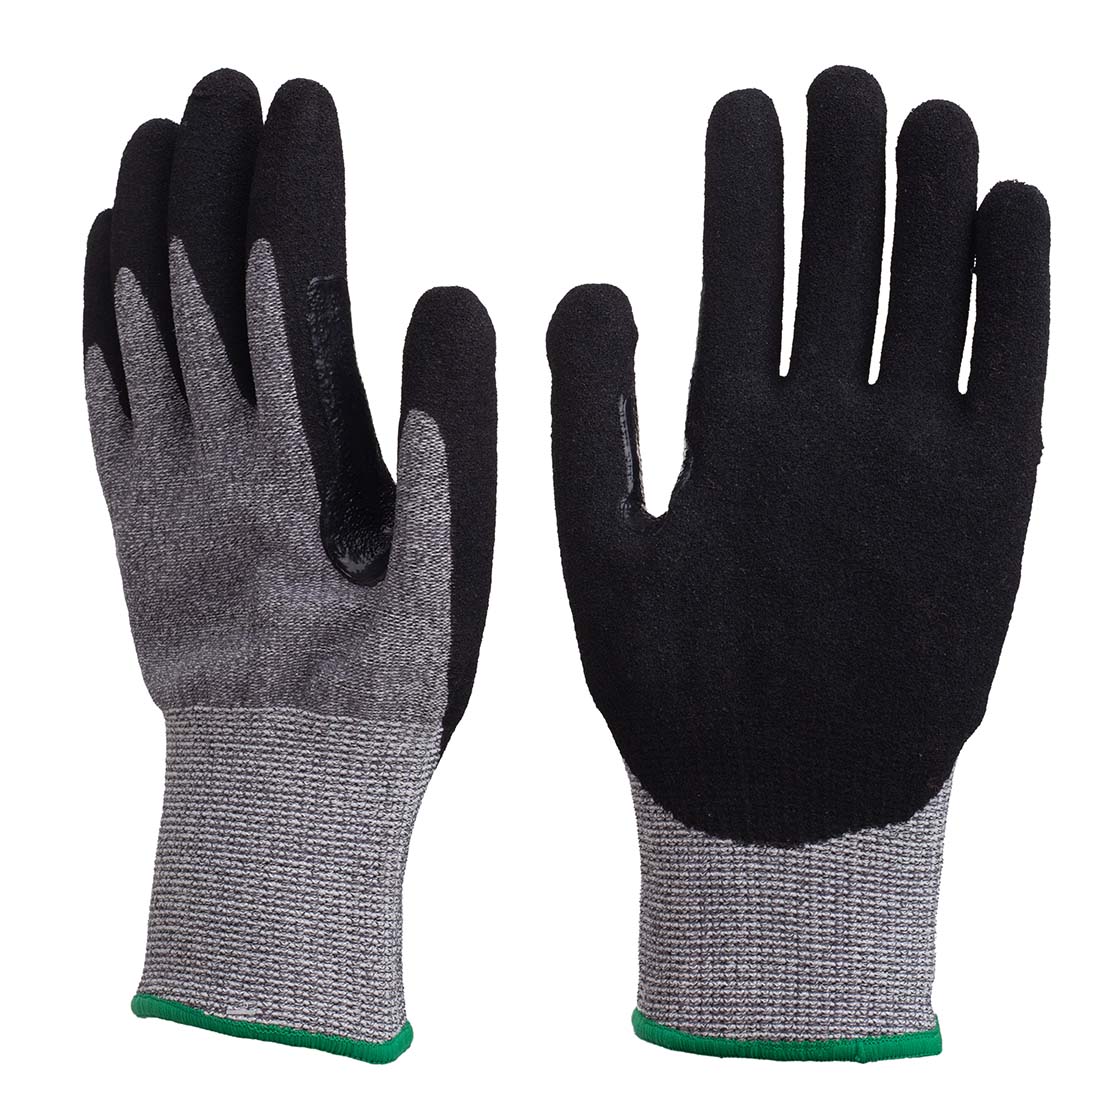 13G anti-cut nitrile coated gloves | Anti-cut nitrile coated gloves | Nitrile coated gloves